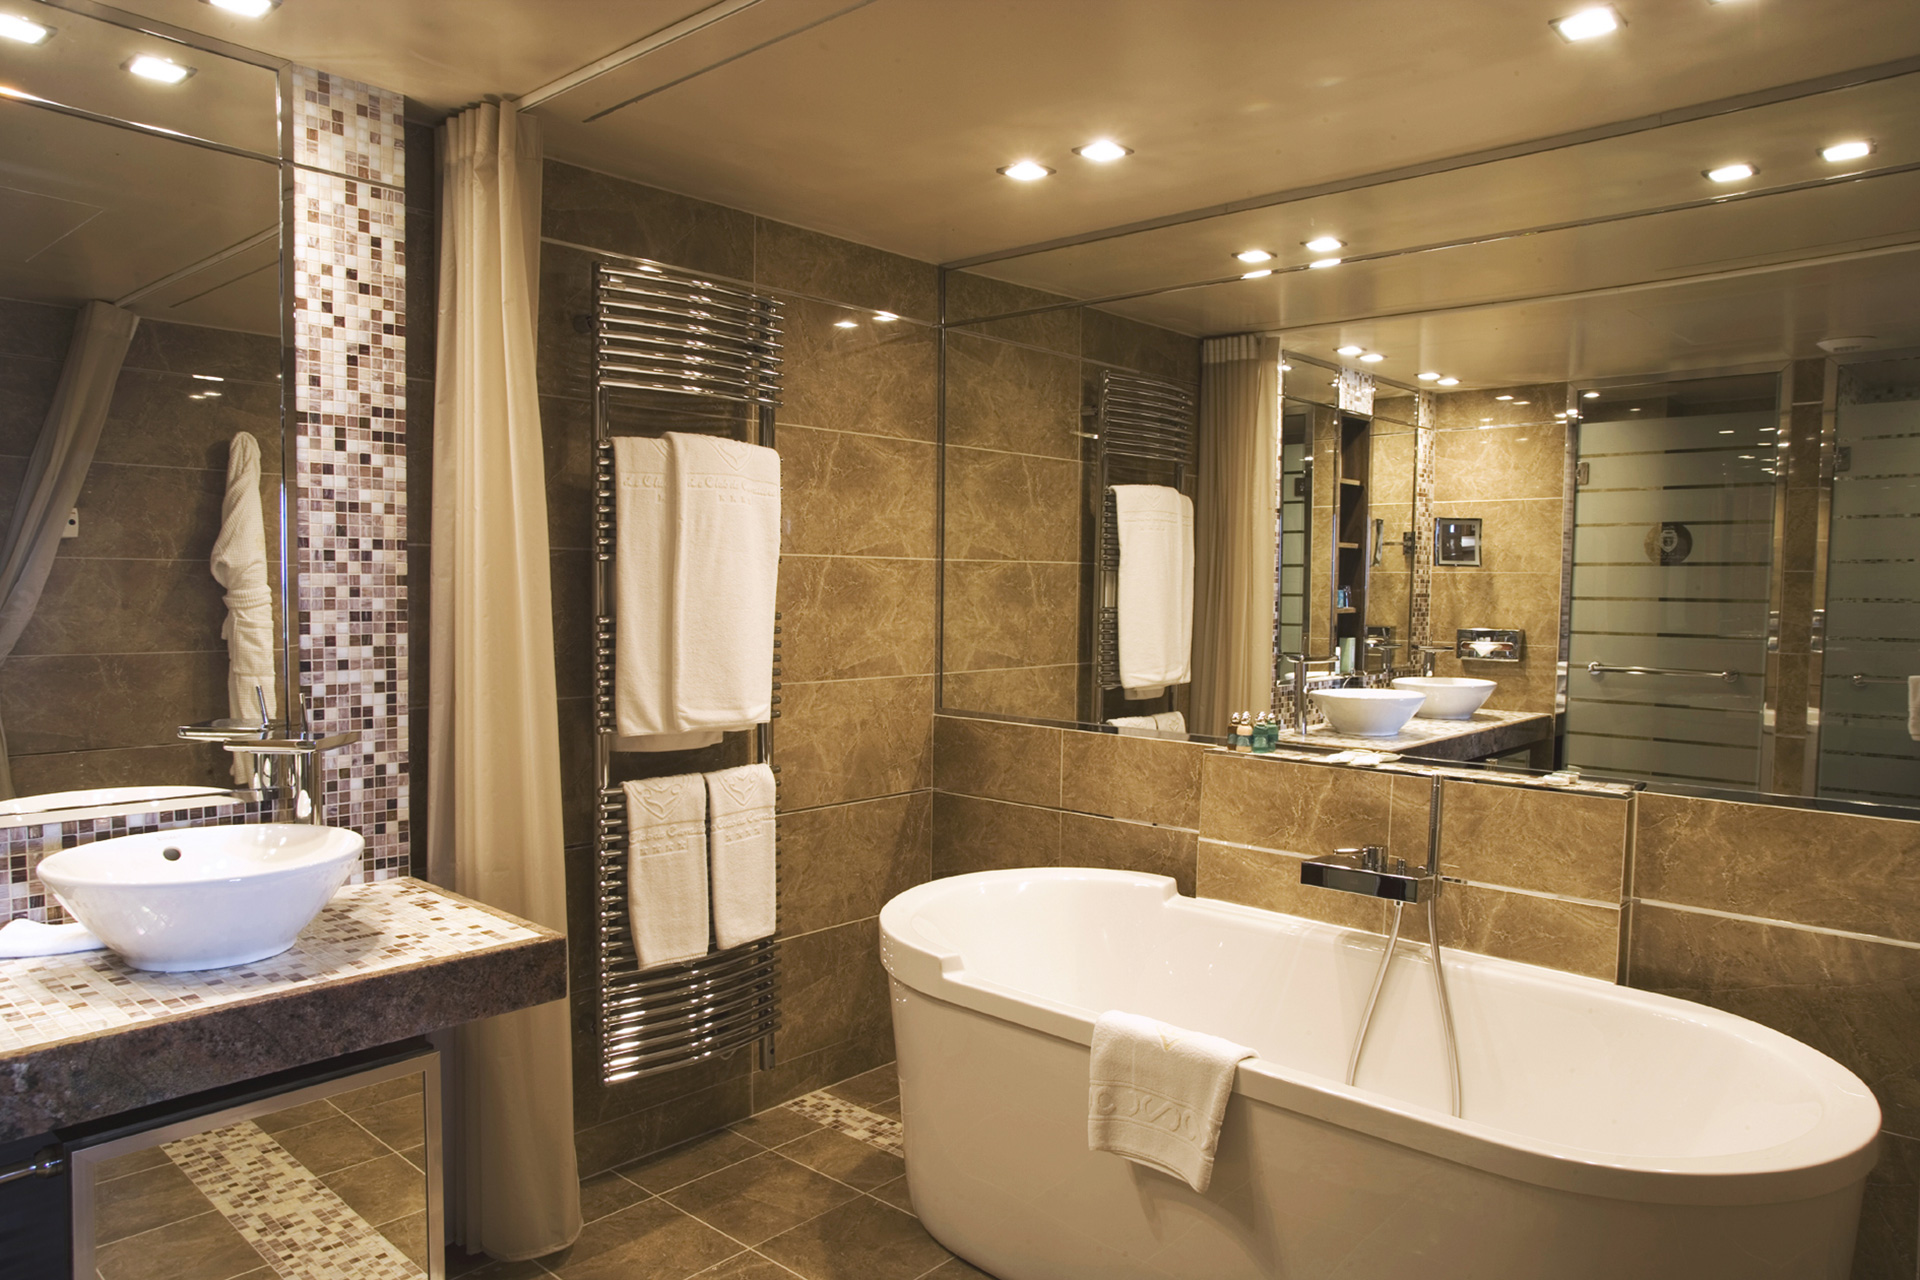 Bathroom for Club de Cavalière Hôtel & Spa 5*  by Borella Art Design